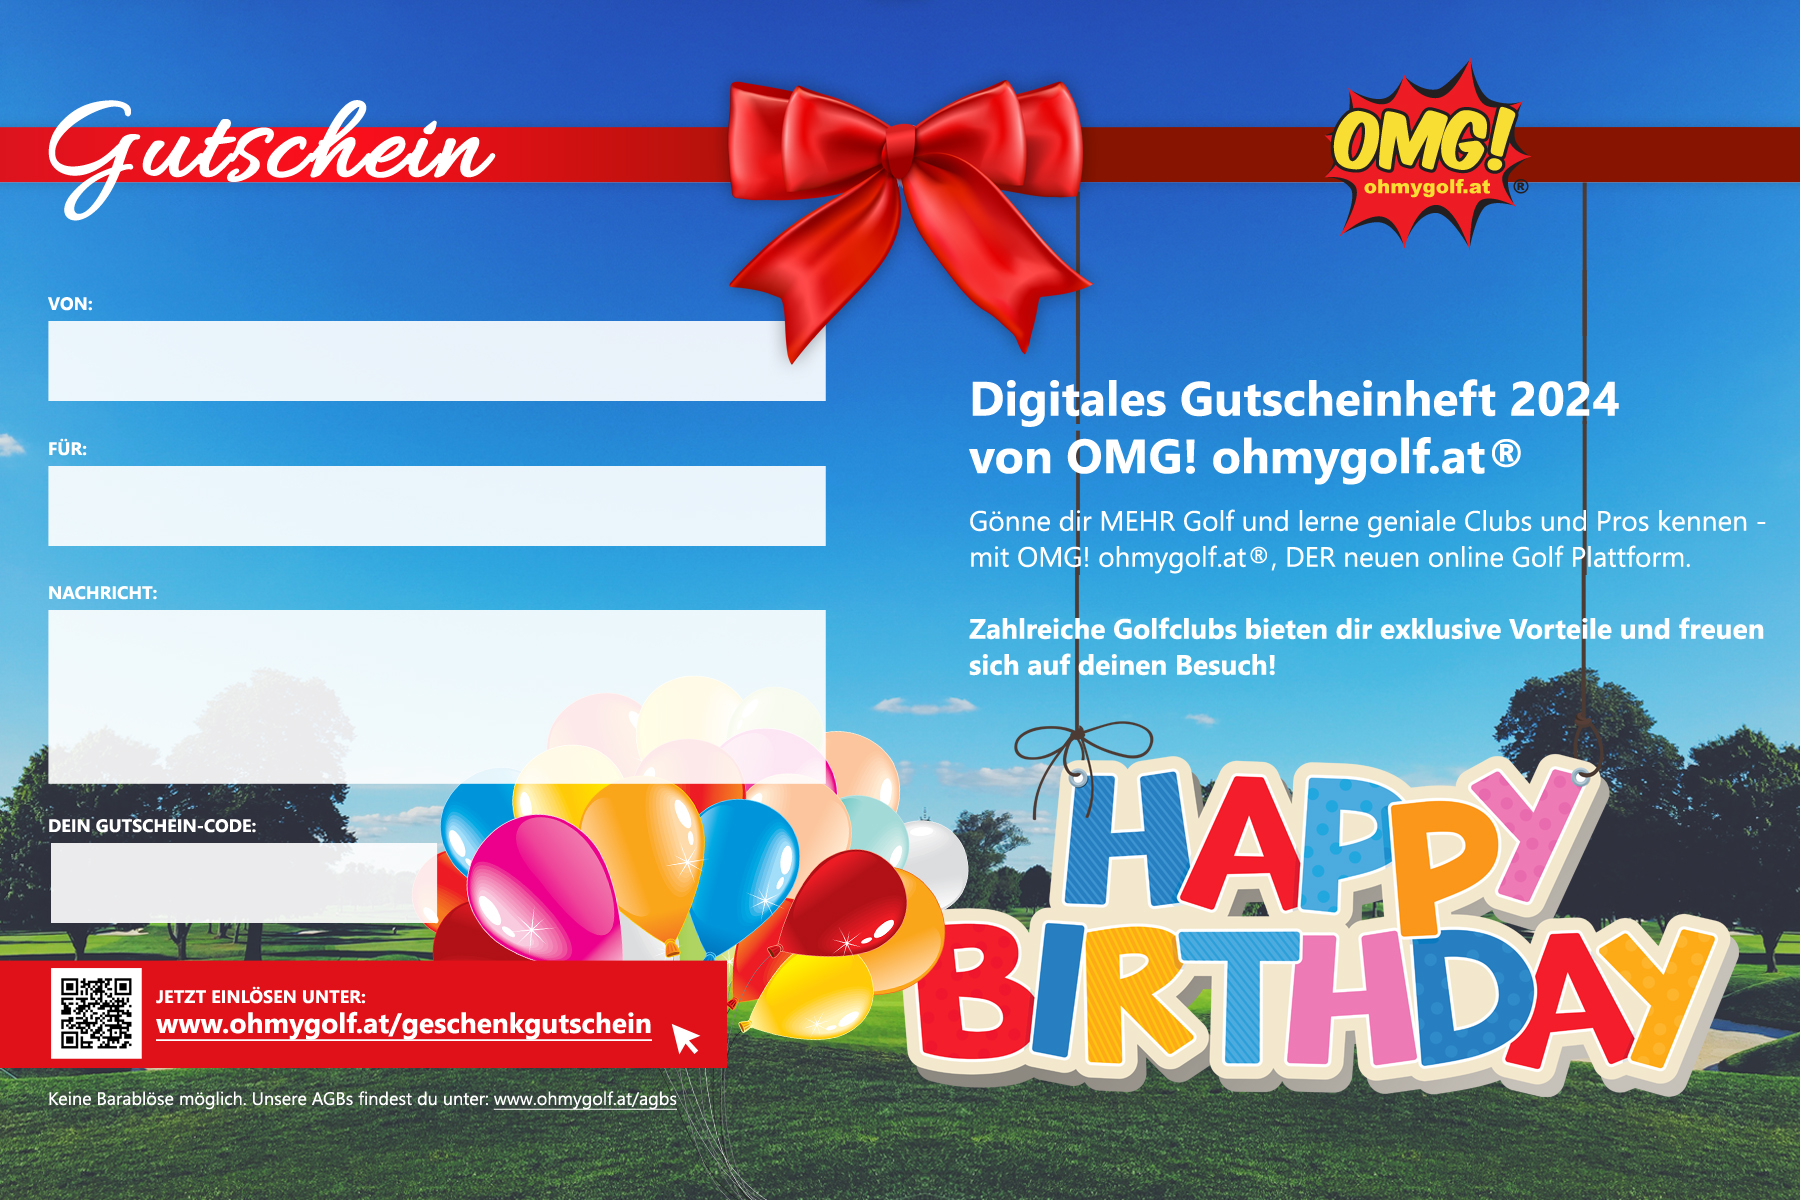 Digitales Golf-Gutscheinbuch von OMG! ohmygolf.at® verschenken